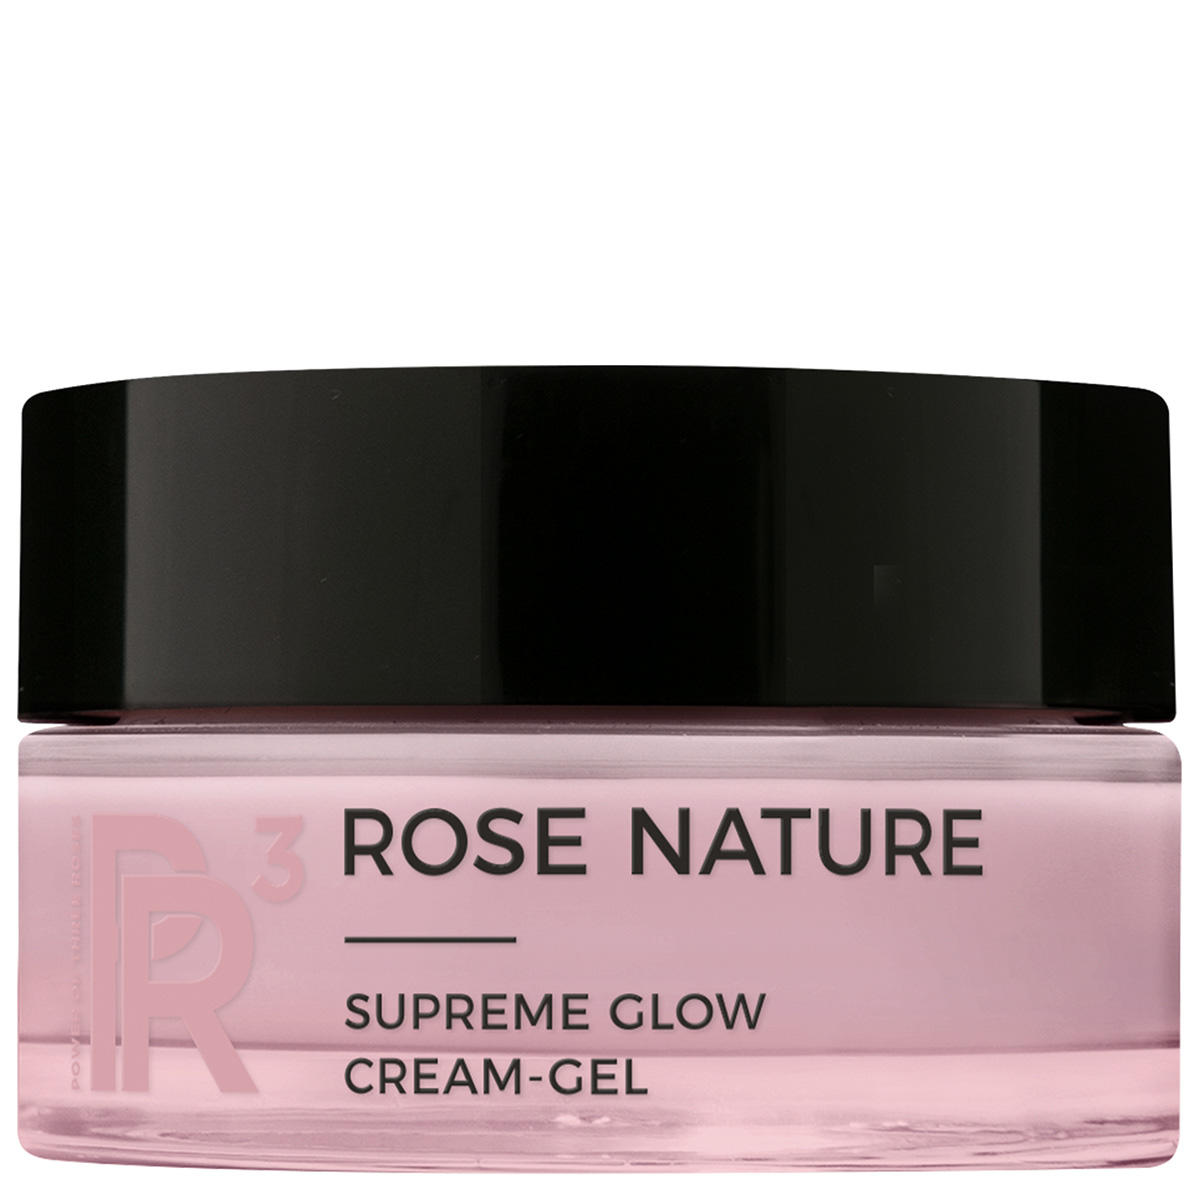 ANNEMARIE BÖRLIND ROSE NATURE Supreme Glow Cream-Gel 50 ml - 1